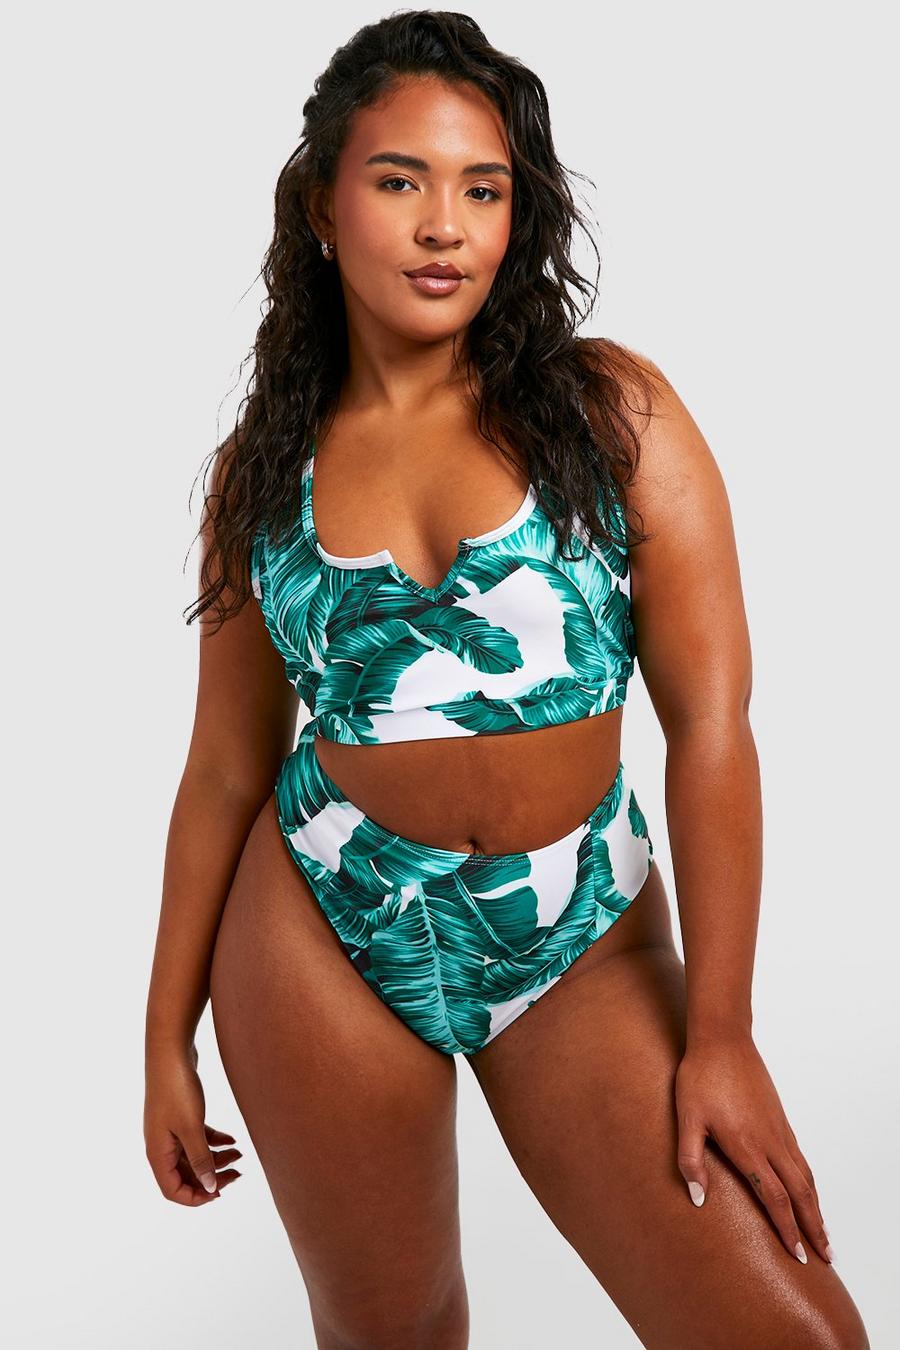 Colloyes Women's Swimwear Twist Bandeau Bikini Top Plus Size